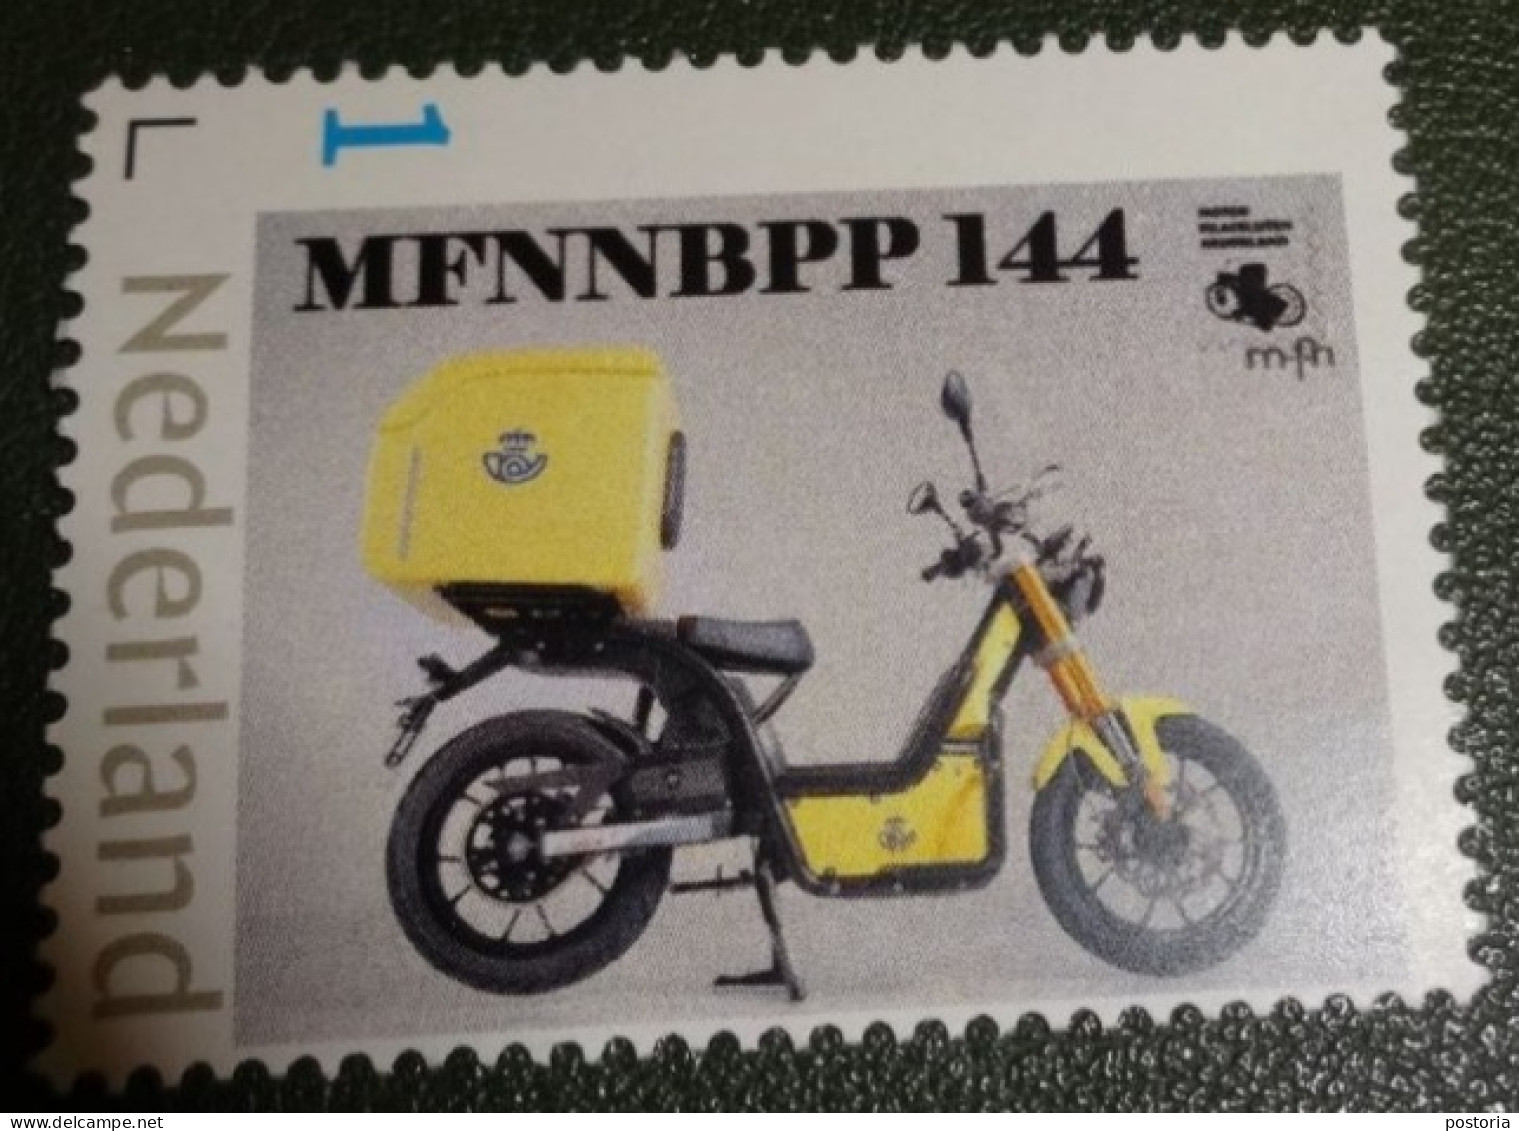 Nederland - NVPH - Persoonlijke - Postfris - MNH - Motorfilatelisten - MFNNBPP 144 - Persoonlijke Postzegels